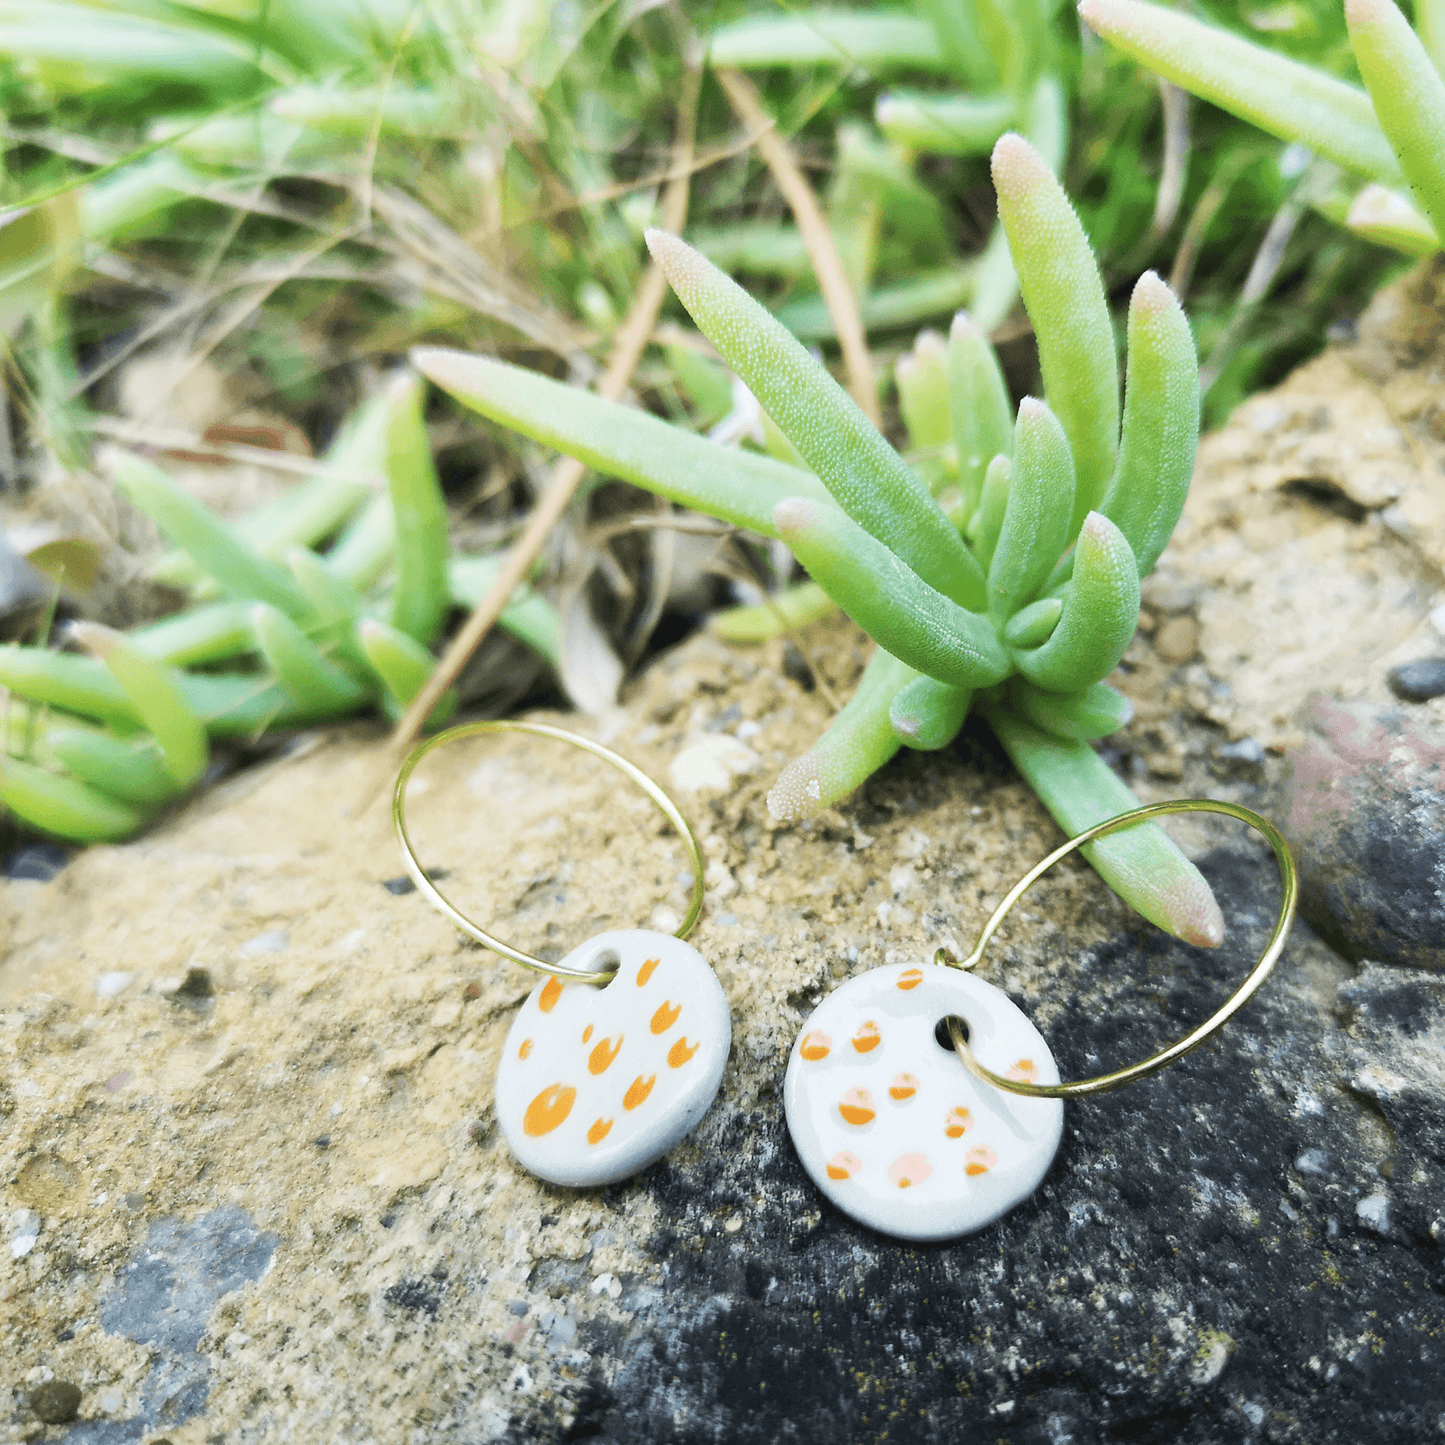 Boucles d'oreilles blanche a pois orange sur rocher avec plante verte